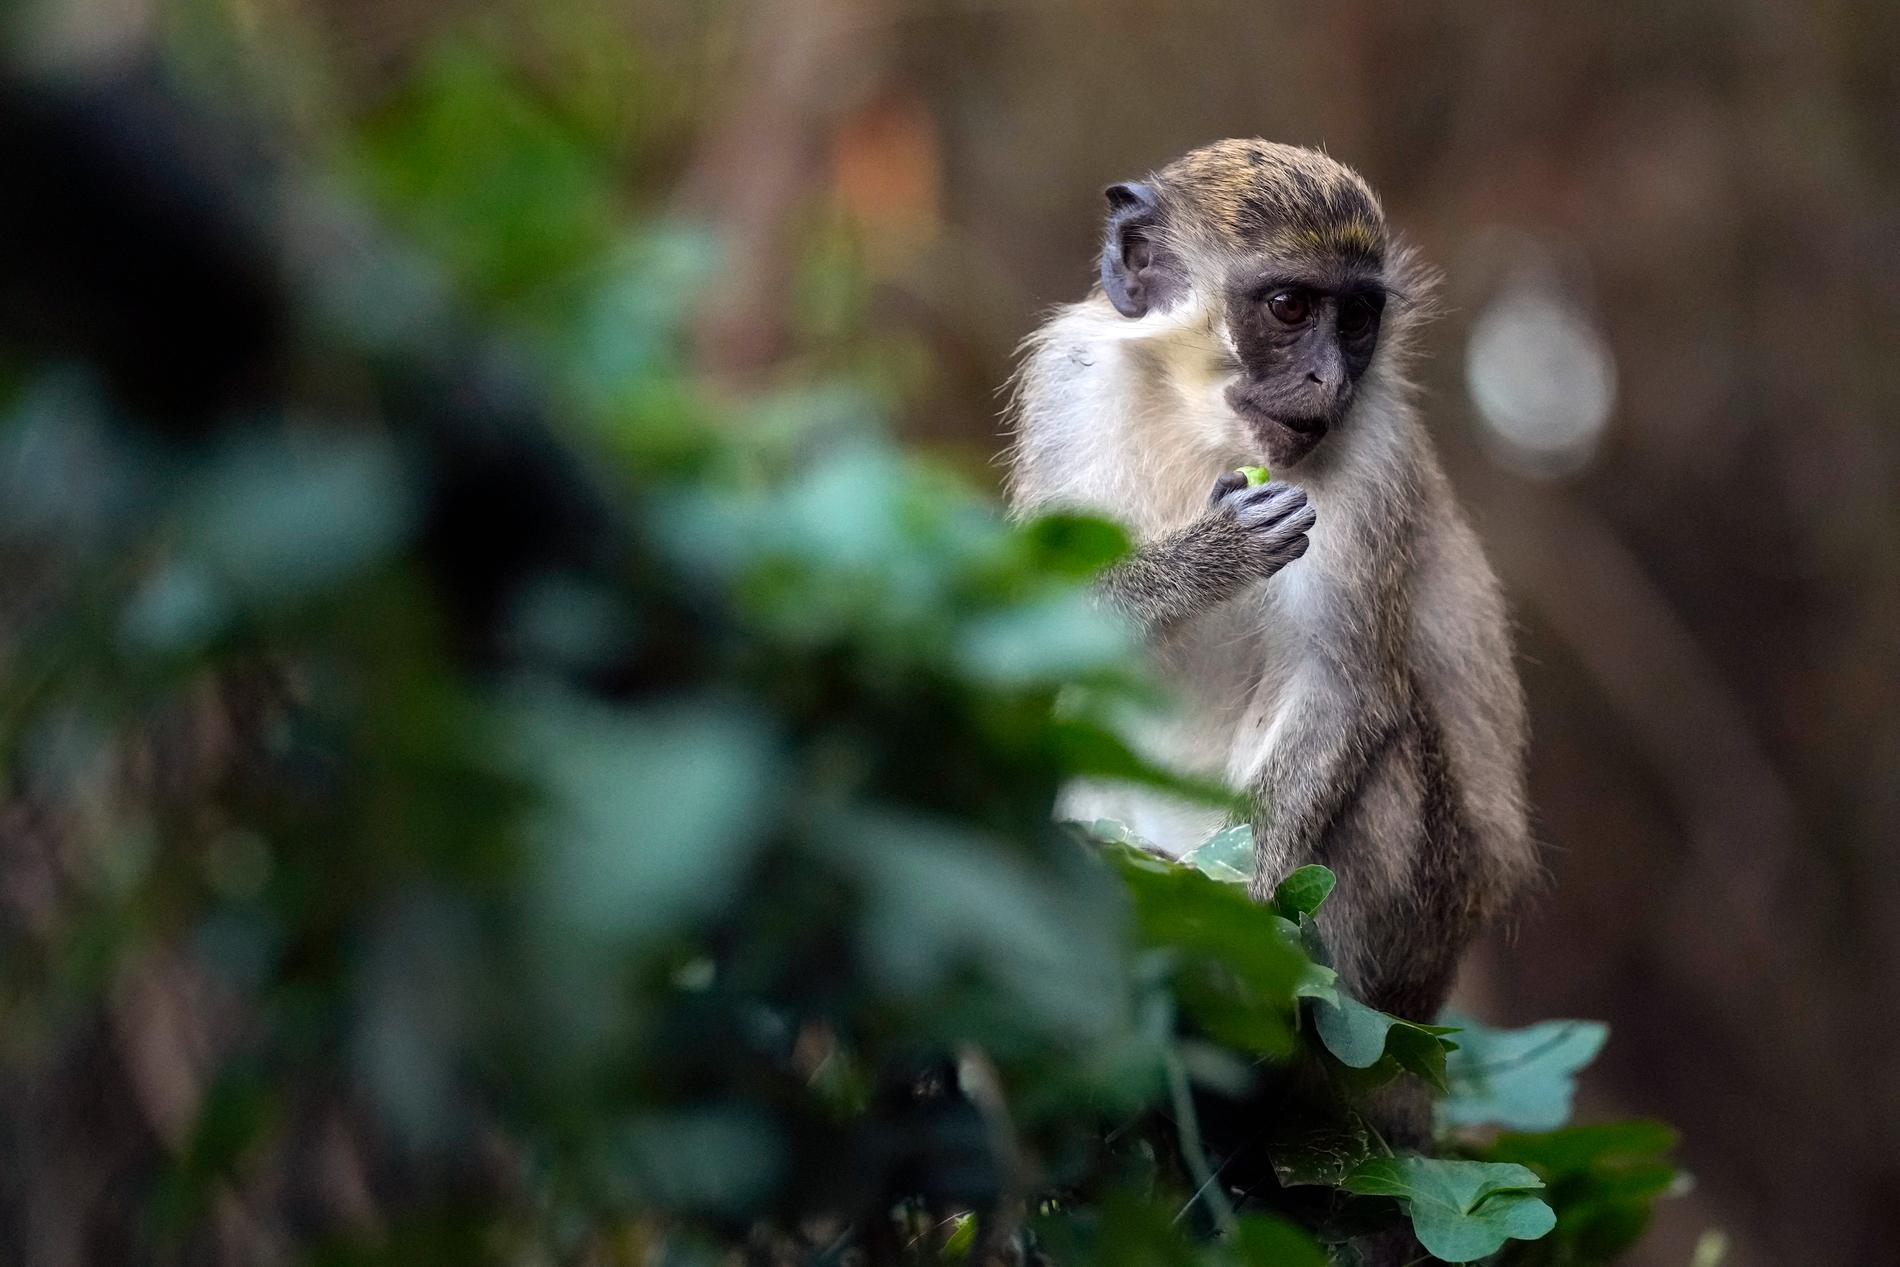 Apkoppor förekommer bland vilda apor i Afrika men sprids oftast av gnagare till människor. Apan på bilden bor på ett zoo i Florida. Arkivbild.